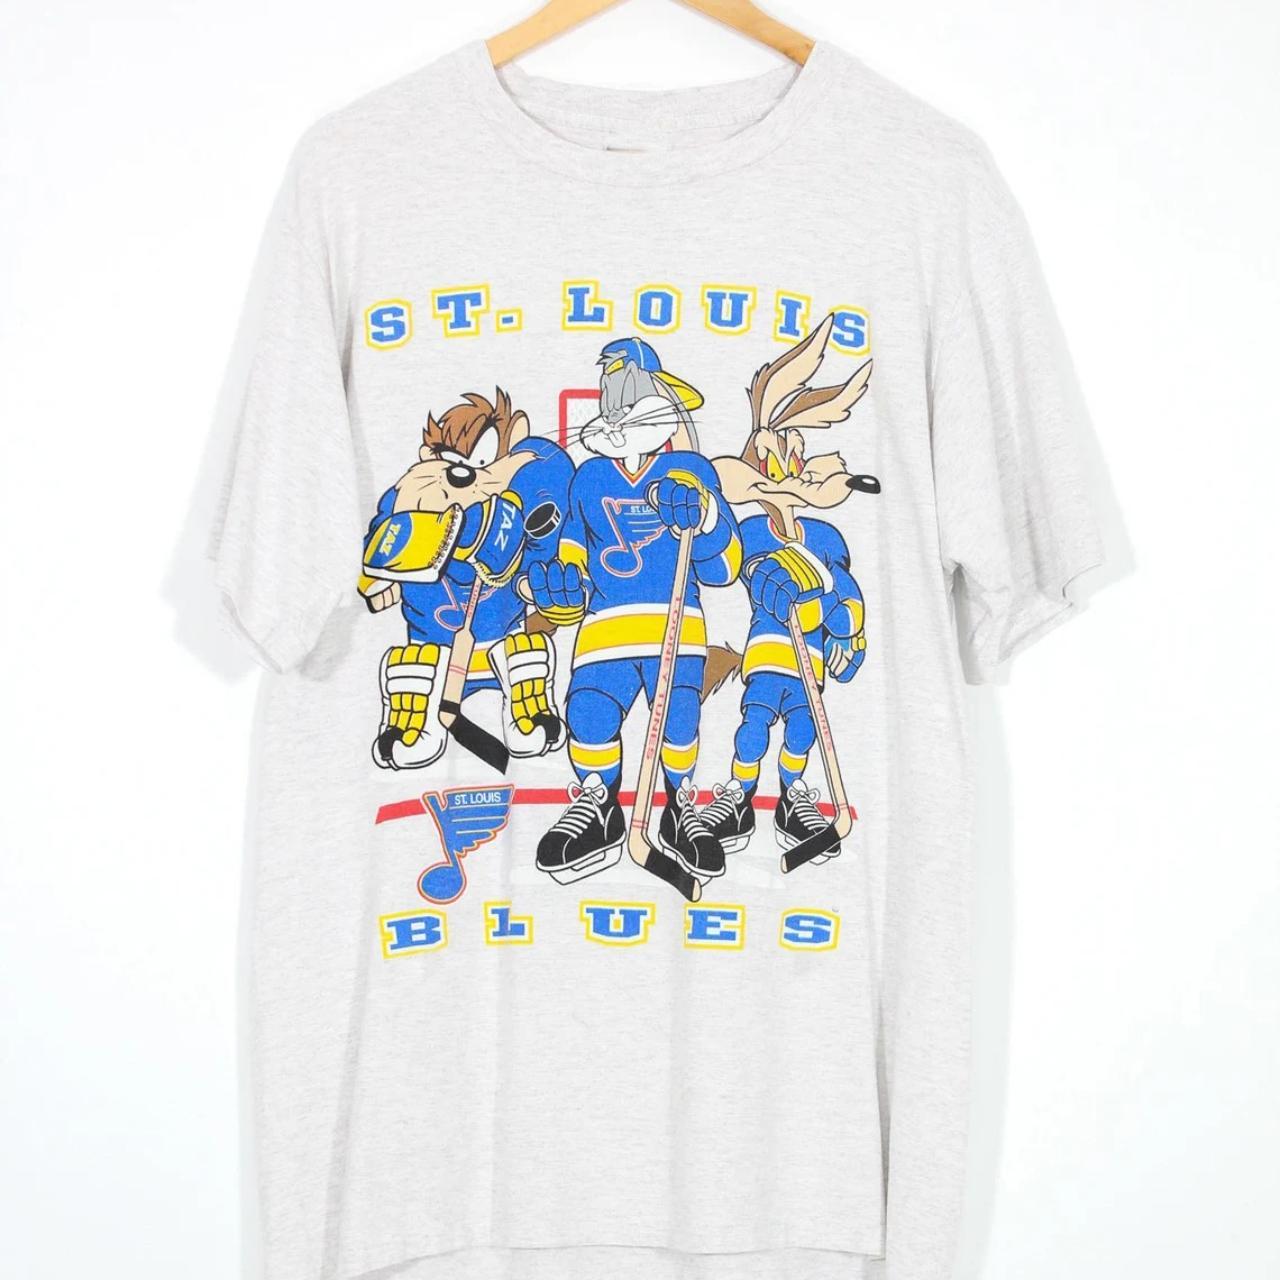 Vintage St Louis blues hockey sweatshirt. NHL St